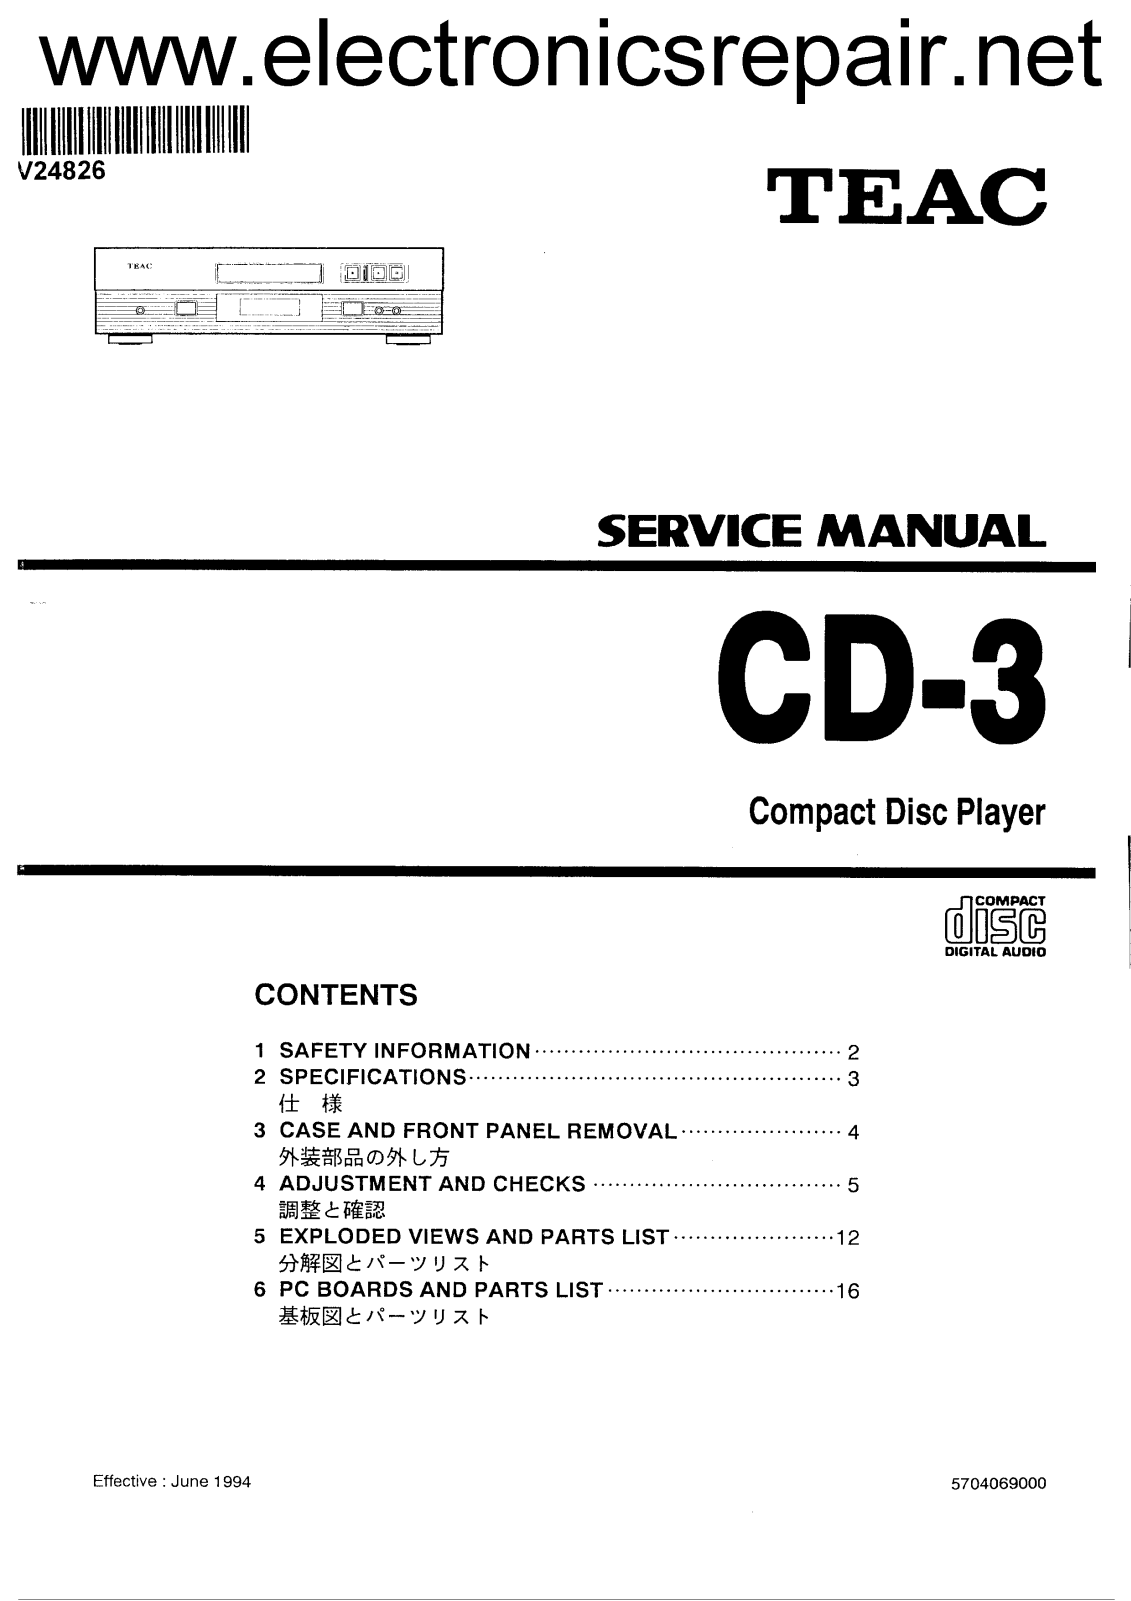 TEAC CD-3 Service manual